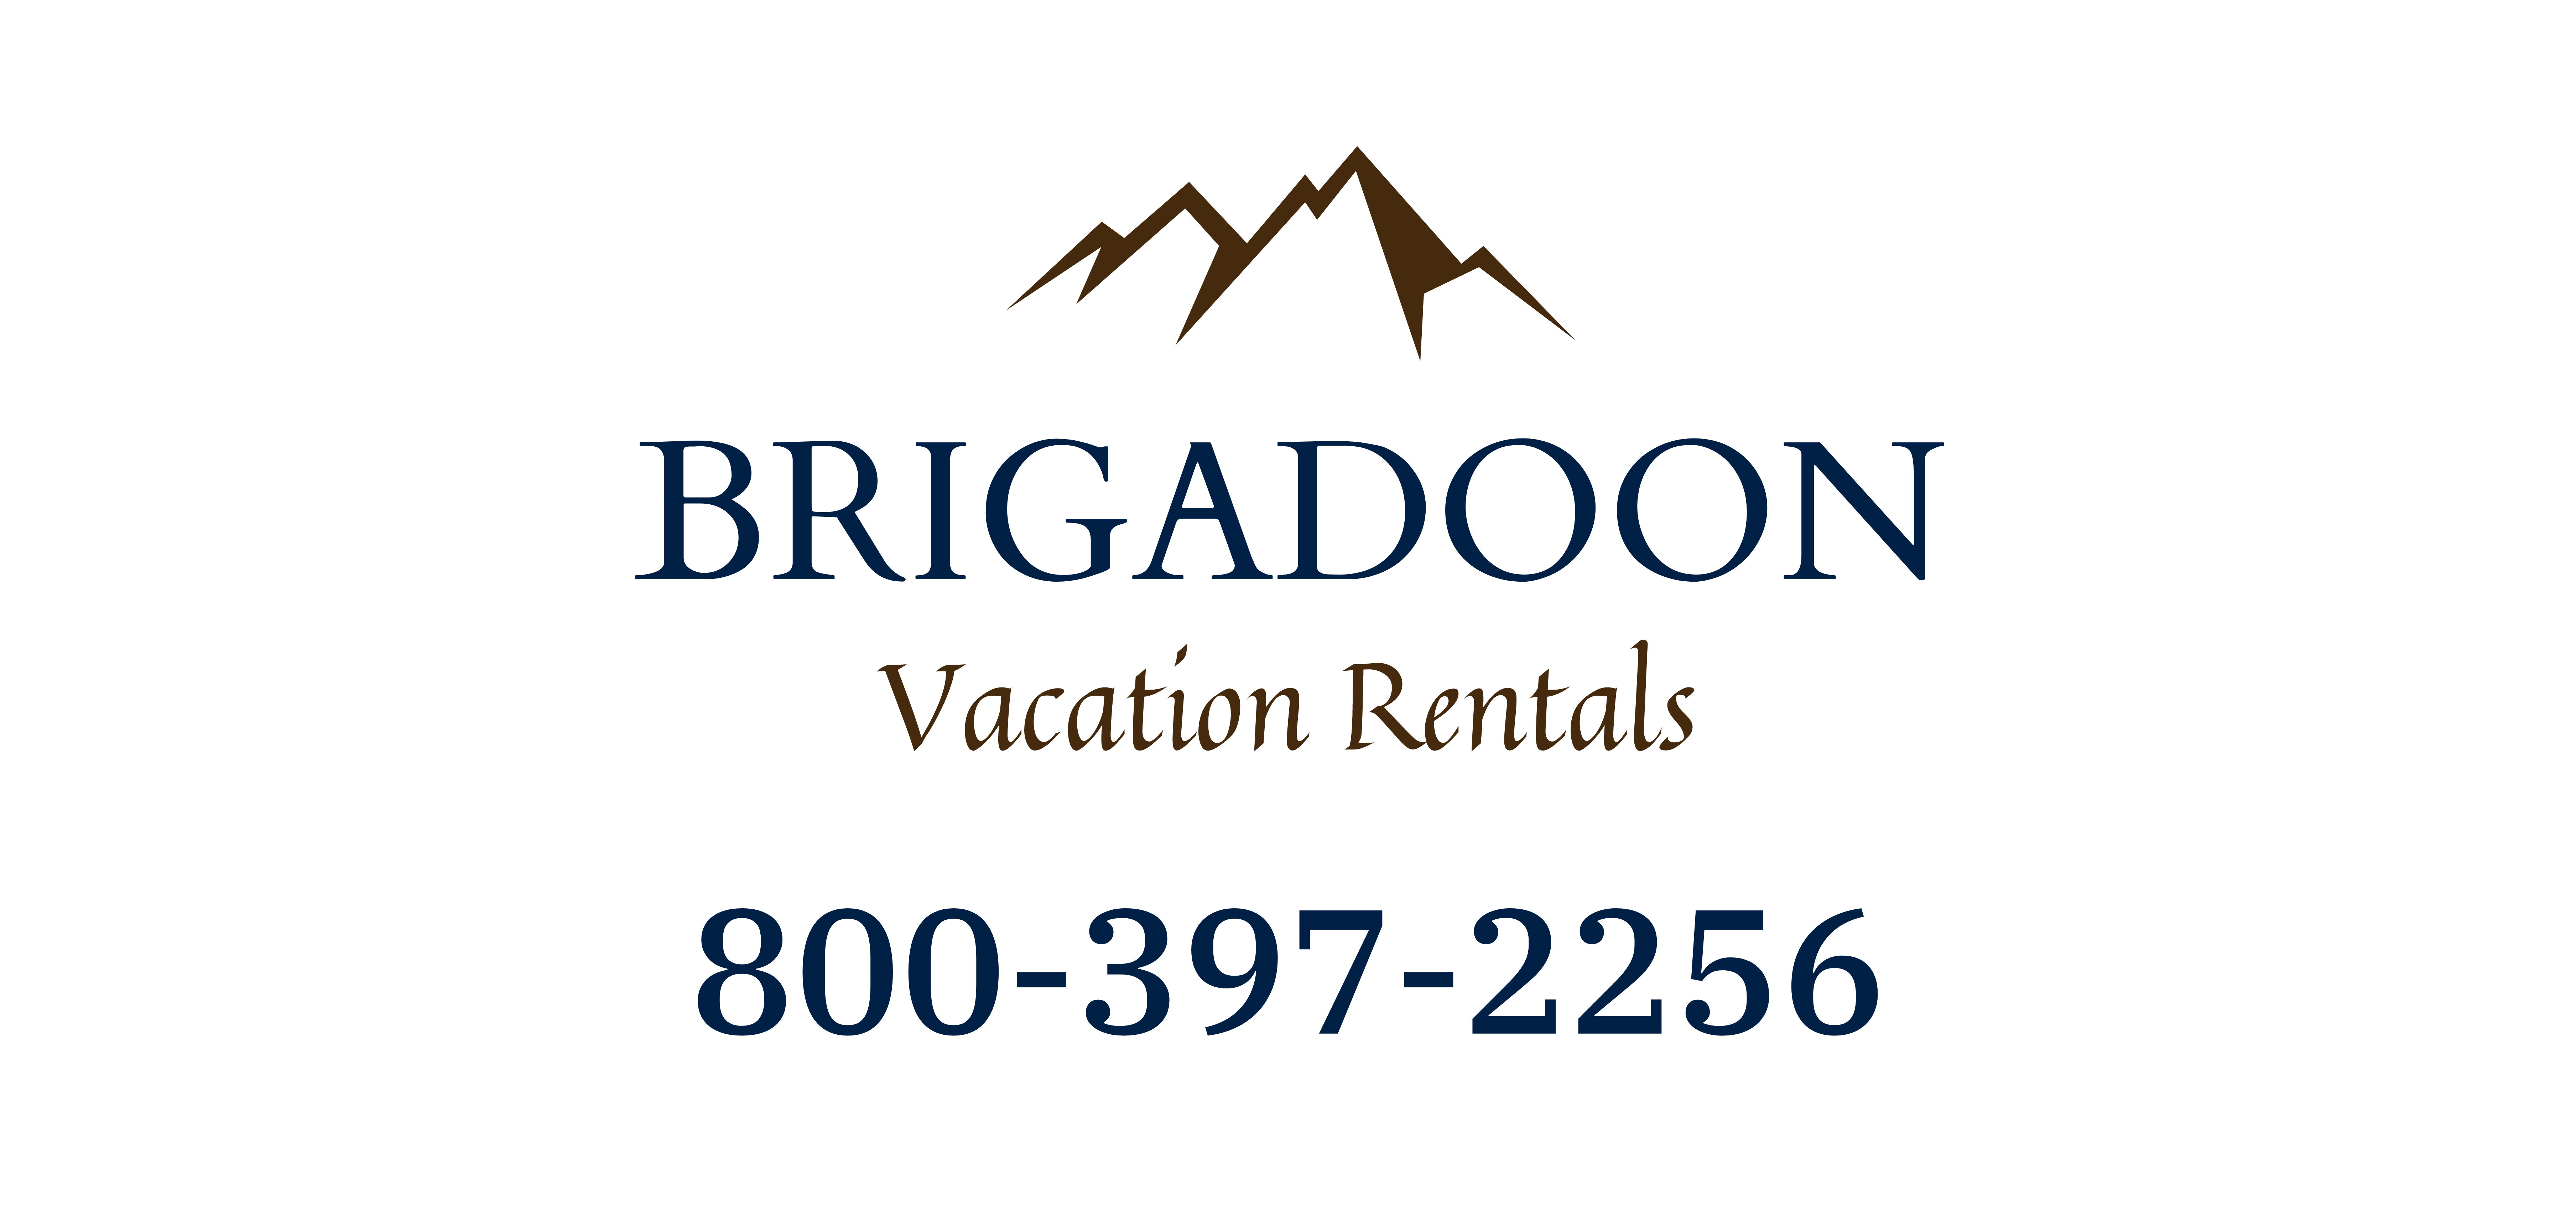 Brigadoon Vacation Rentals